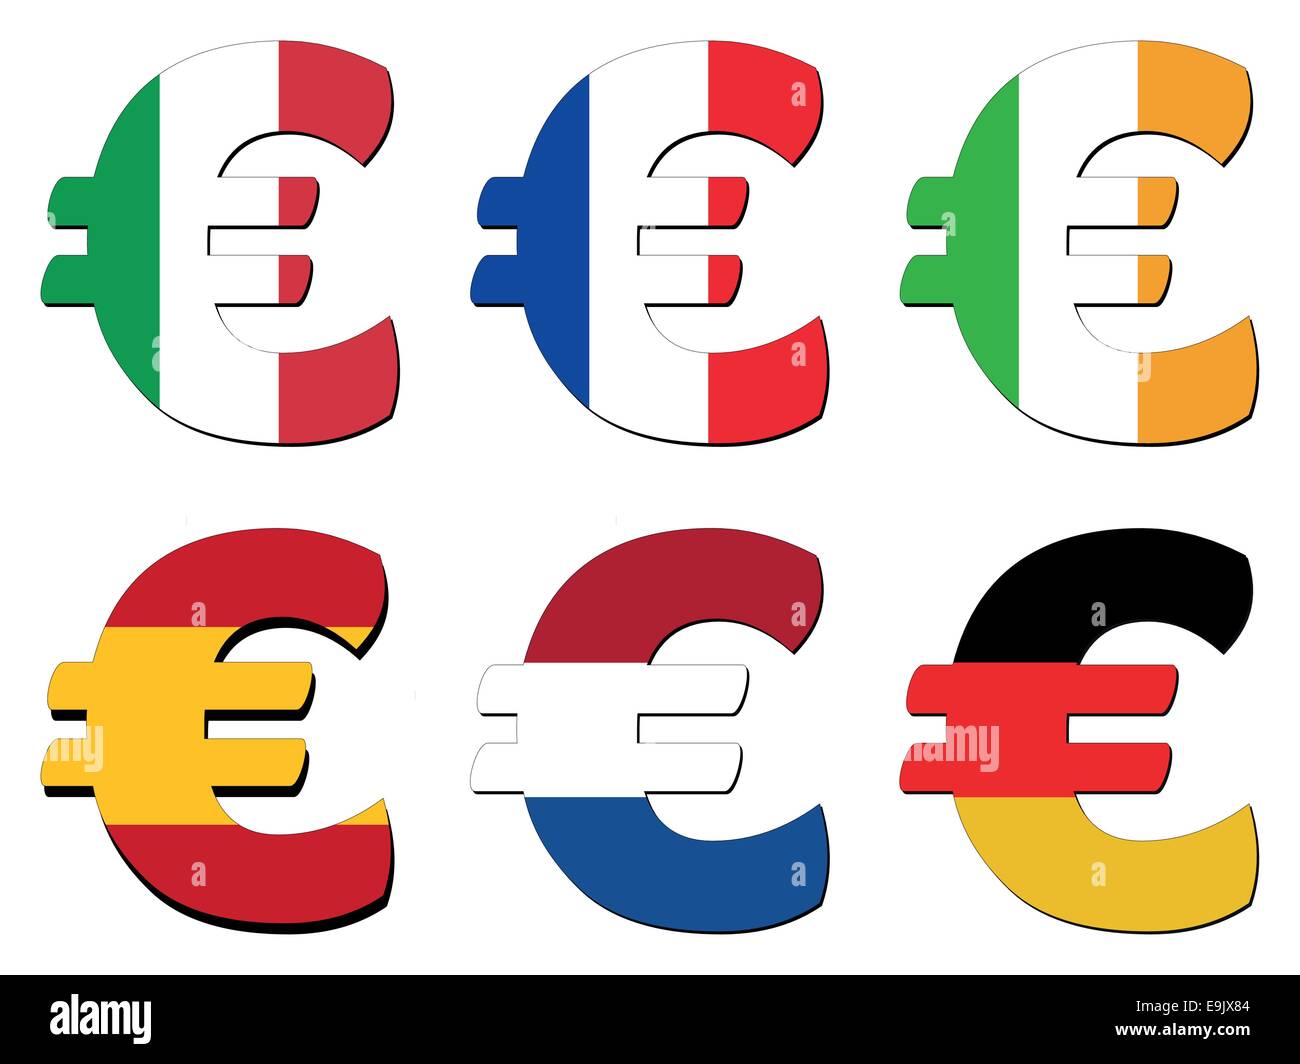 Italian French Irish Spanish Dutch German Flag euro symbol vector illustration Stock Vector